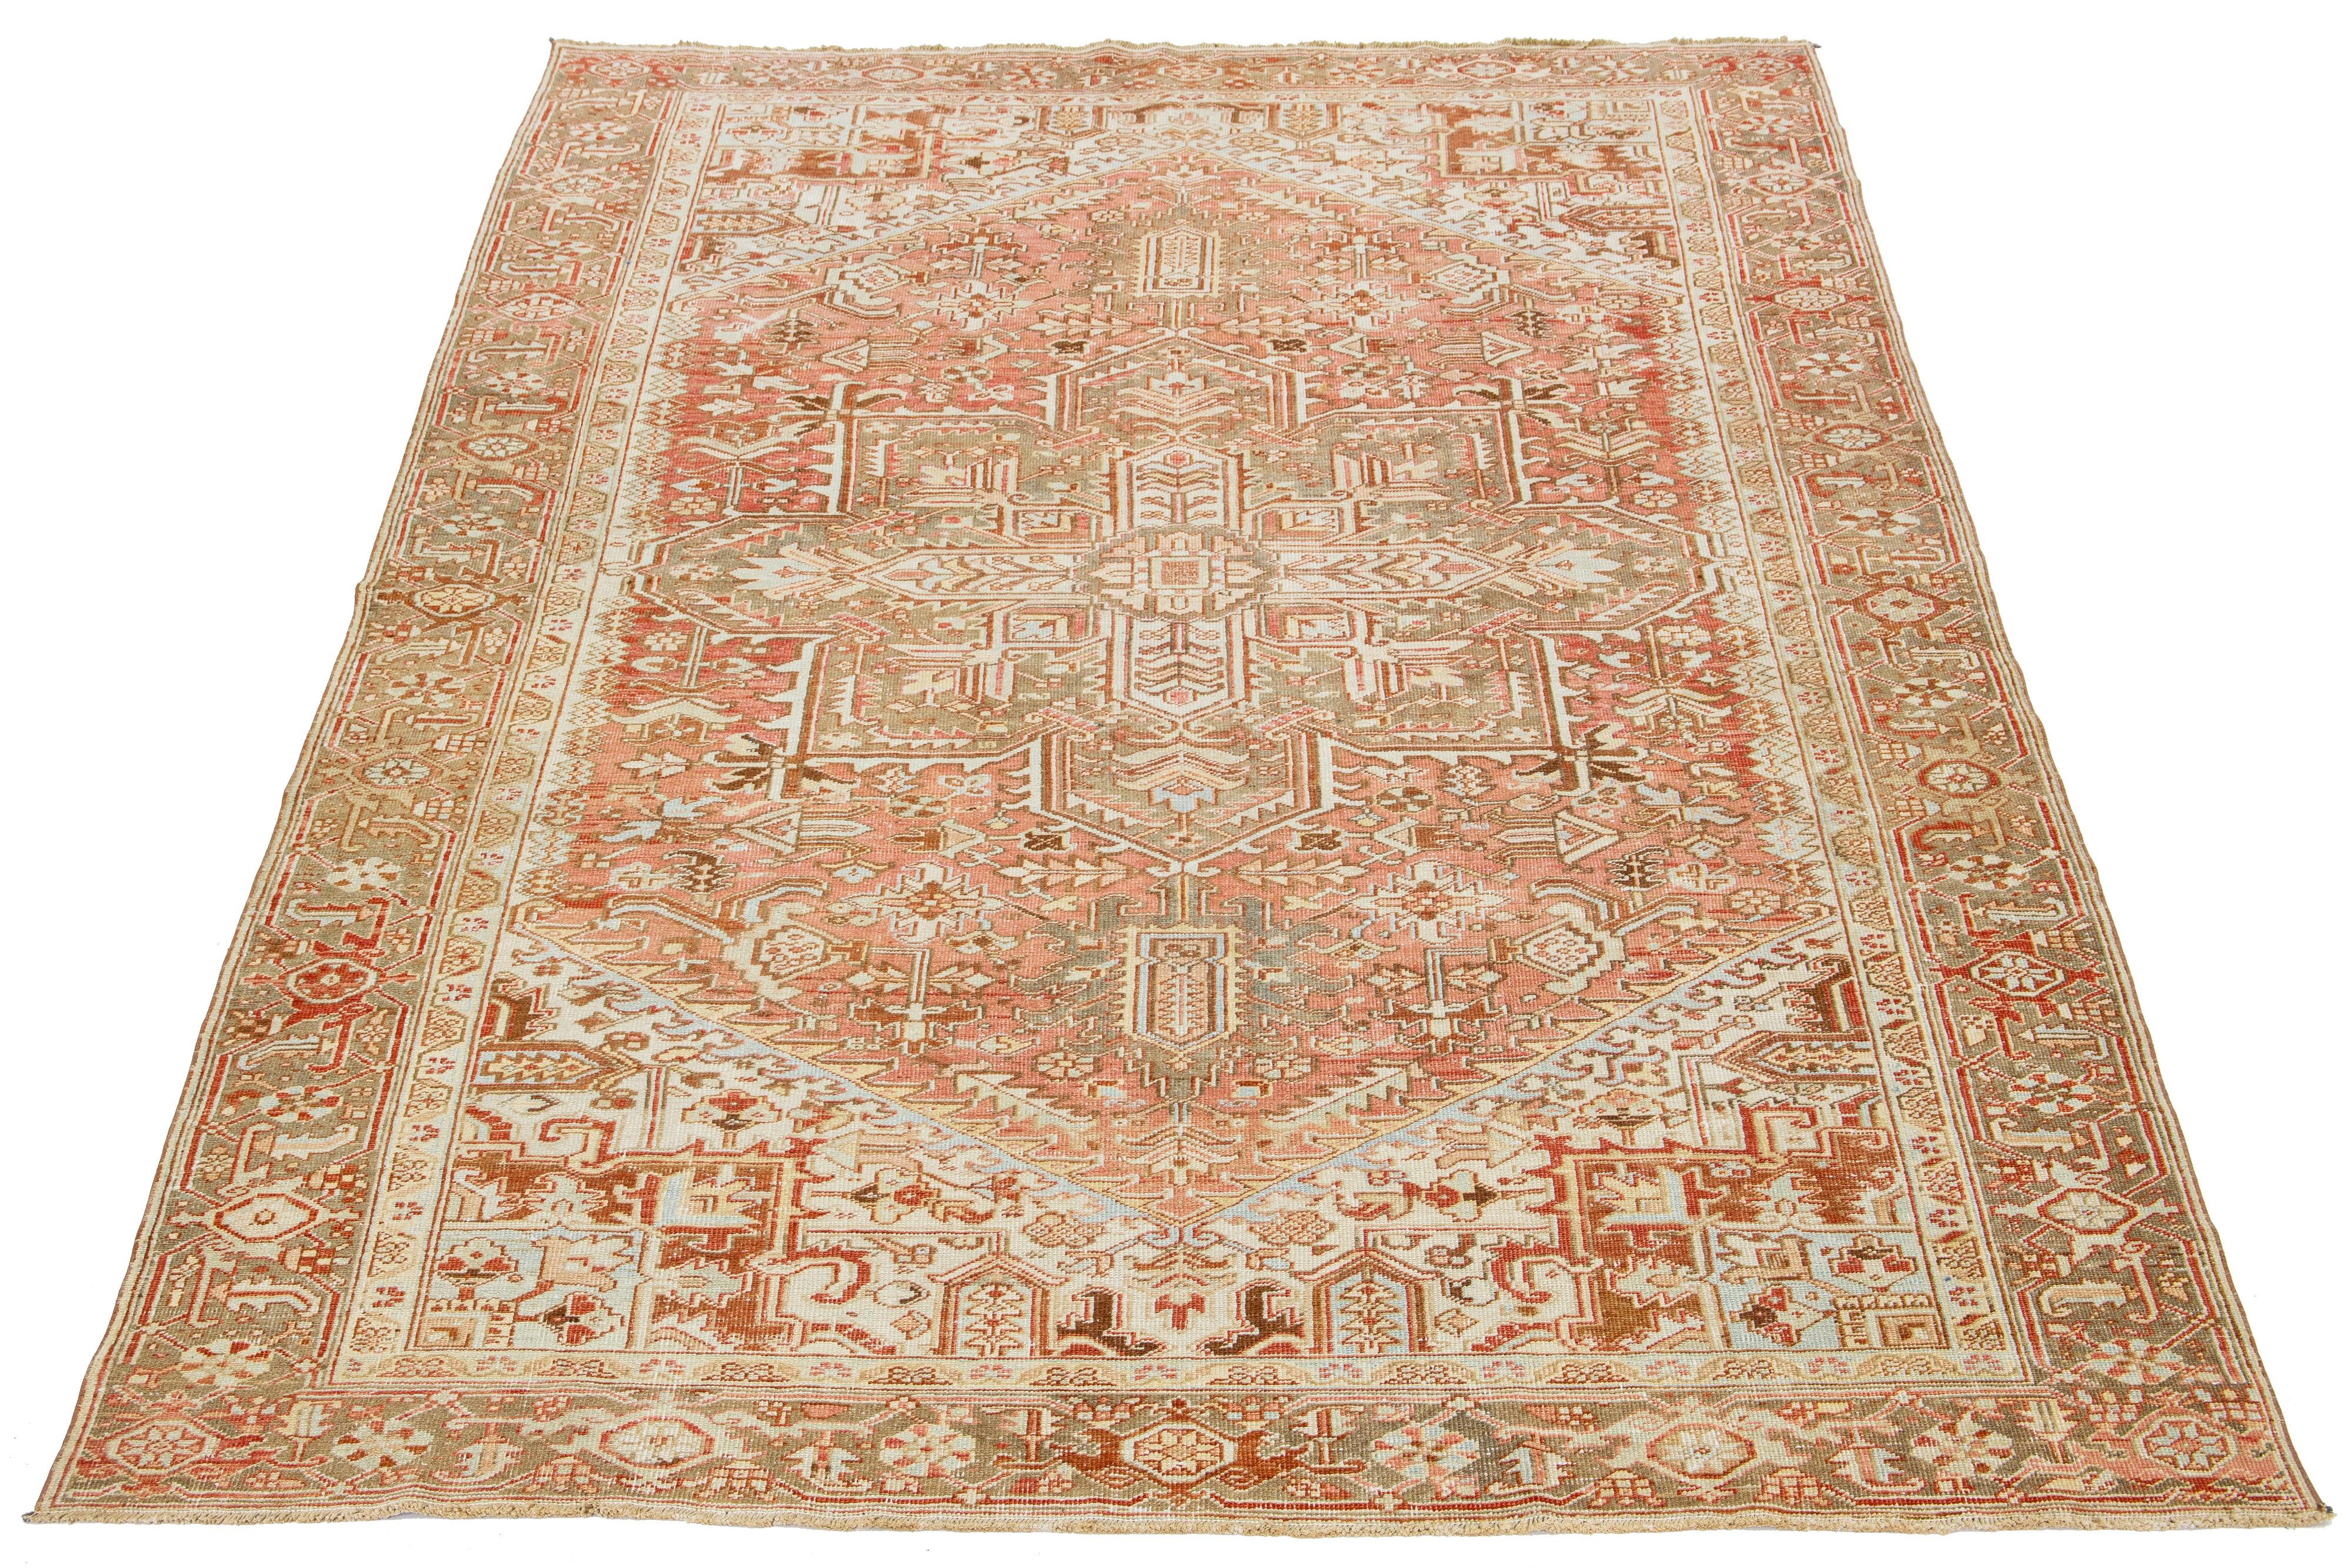 Dieser antike persische Heriz-Teppich ist aus handgeknüpfter Wolle gefertigt. Das rostorangefarbene Feld zeigt ein fesselndes Allover-Muster, das mit Beige-, Pfirsich-, Braun- und Blautönen verziert ist.

Dieser Teppich misst 7'11' x 11'9